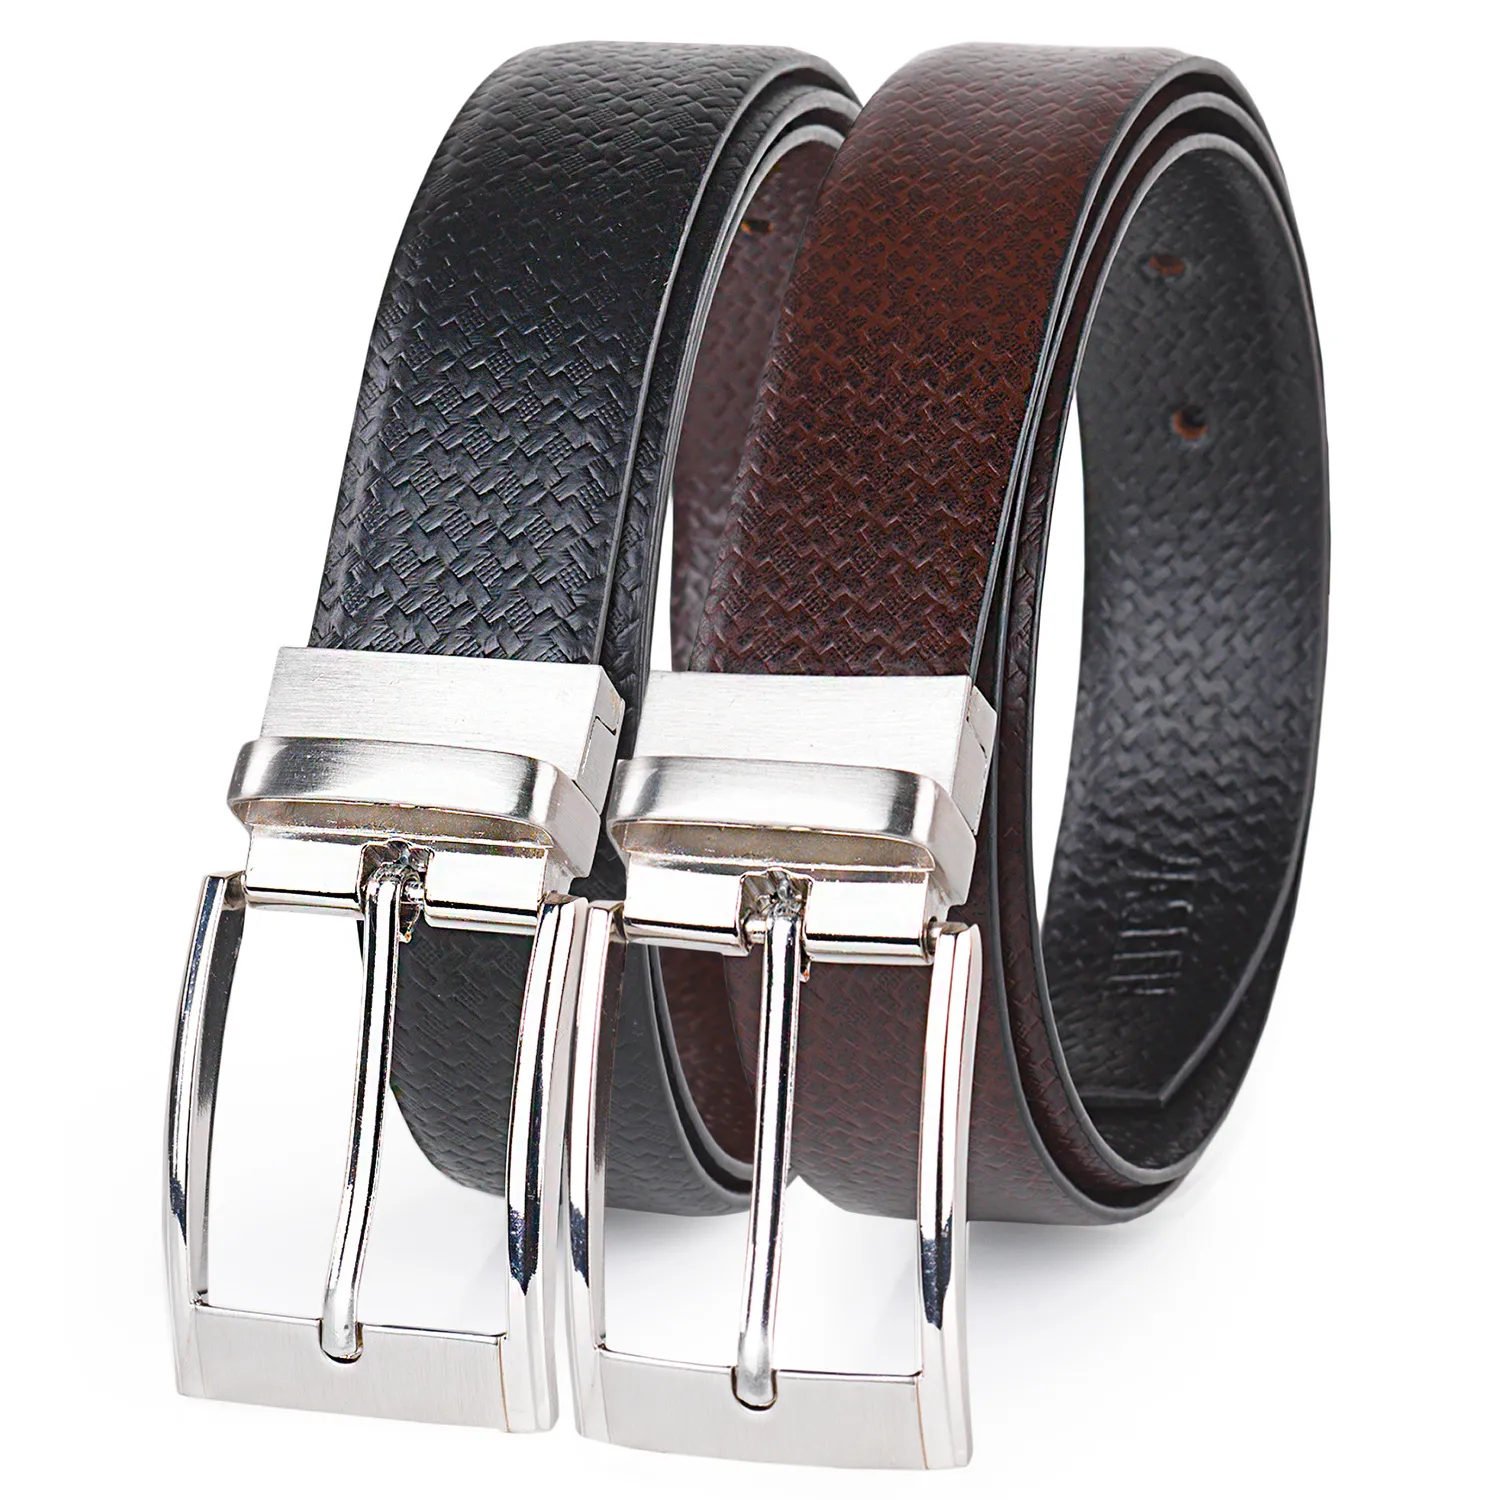 Cinturon Hombre - Cinturones Hombre De Genuina Con Hebillas Cinturon De Metal - Cinturón Hombre - - Elegantes Cinturones Hombre Cuero Marca JASLEN 49912 | Miravia